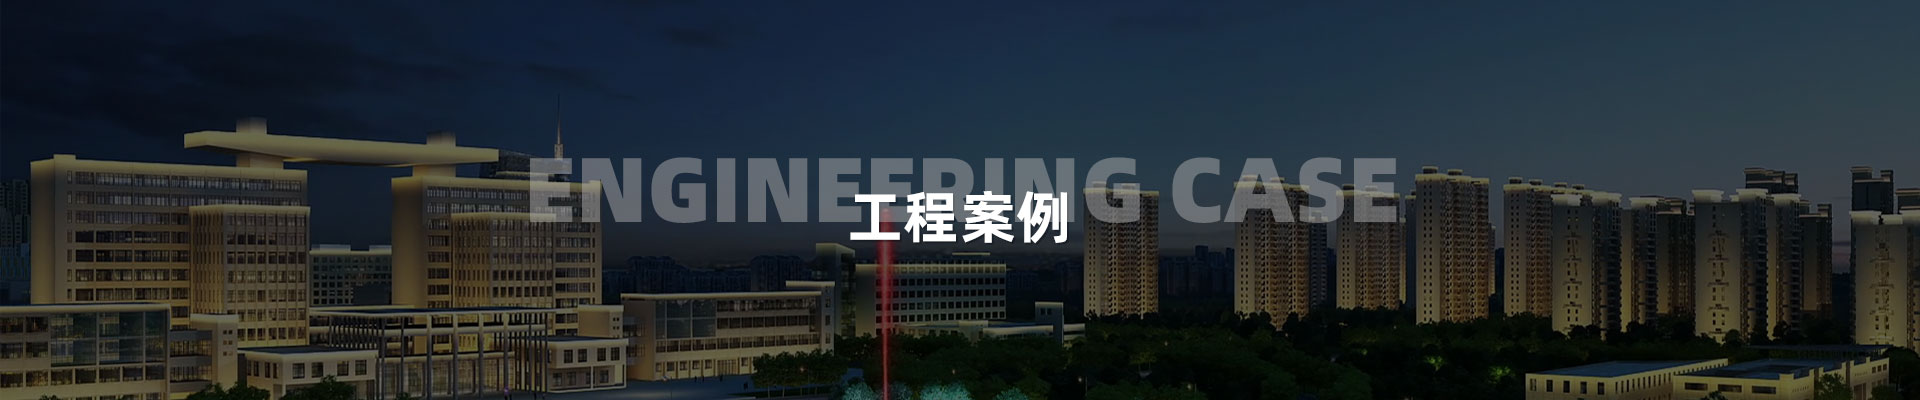 视频案例-深圳市中筑景观亮化照明科技有限公司